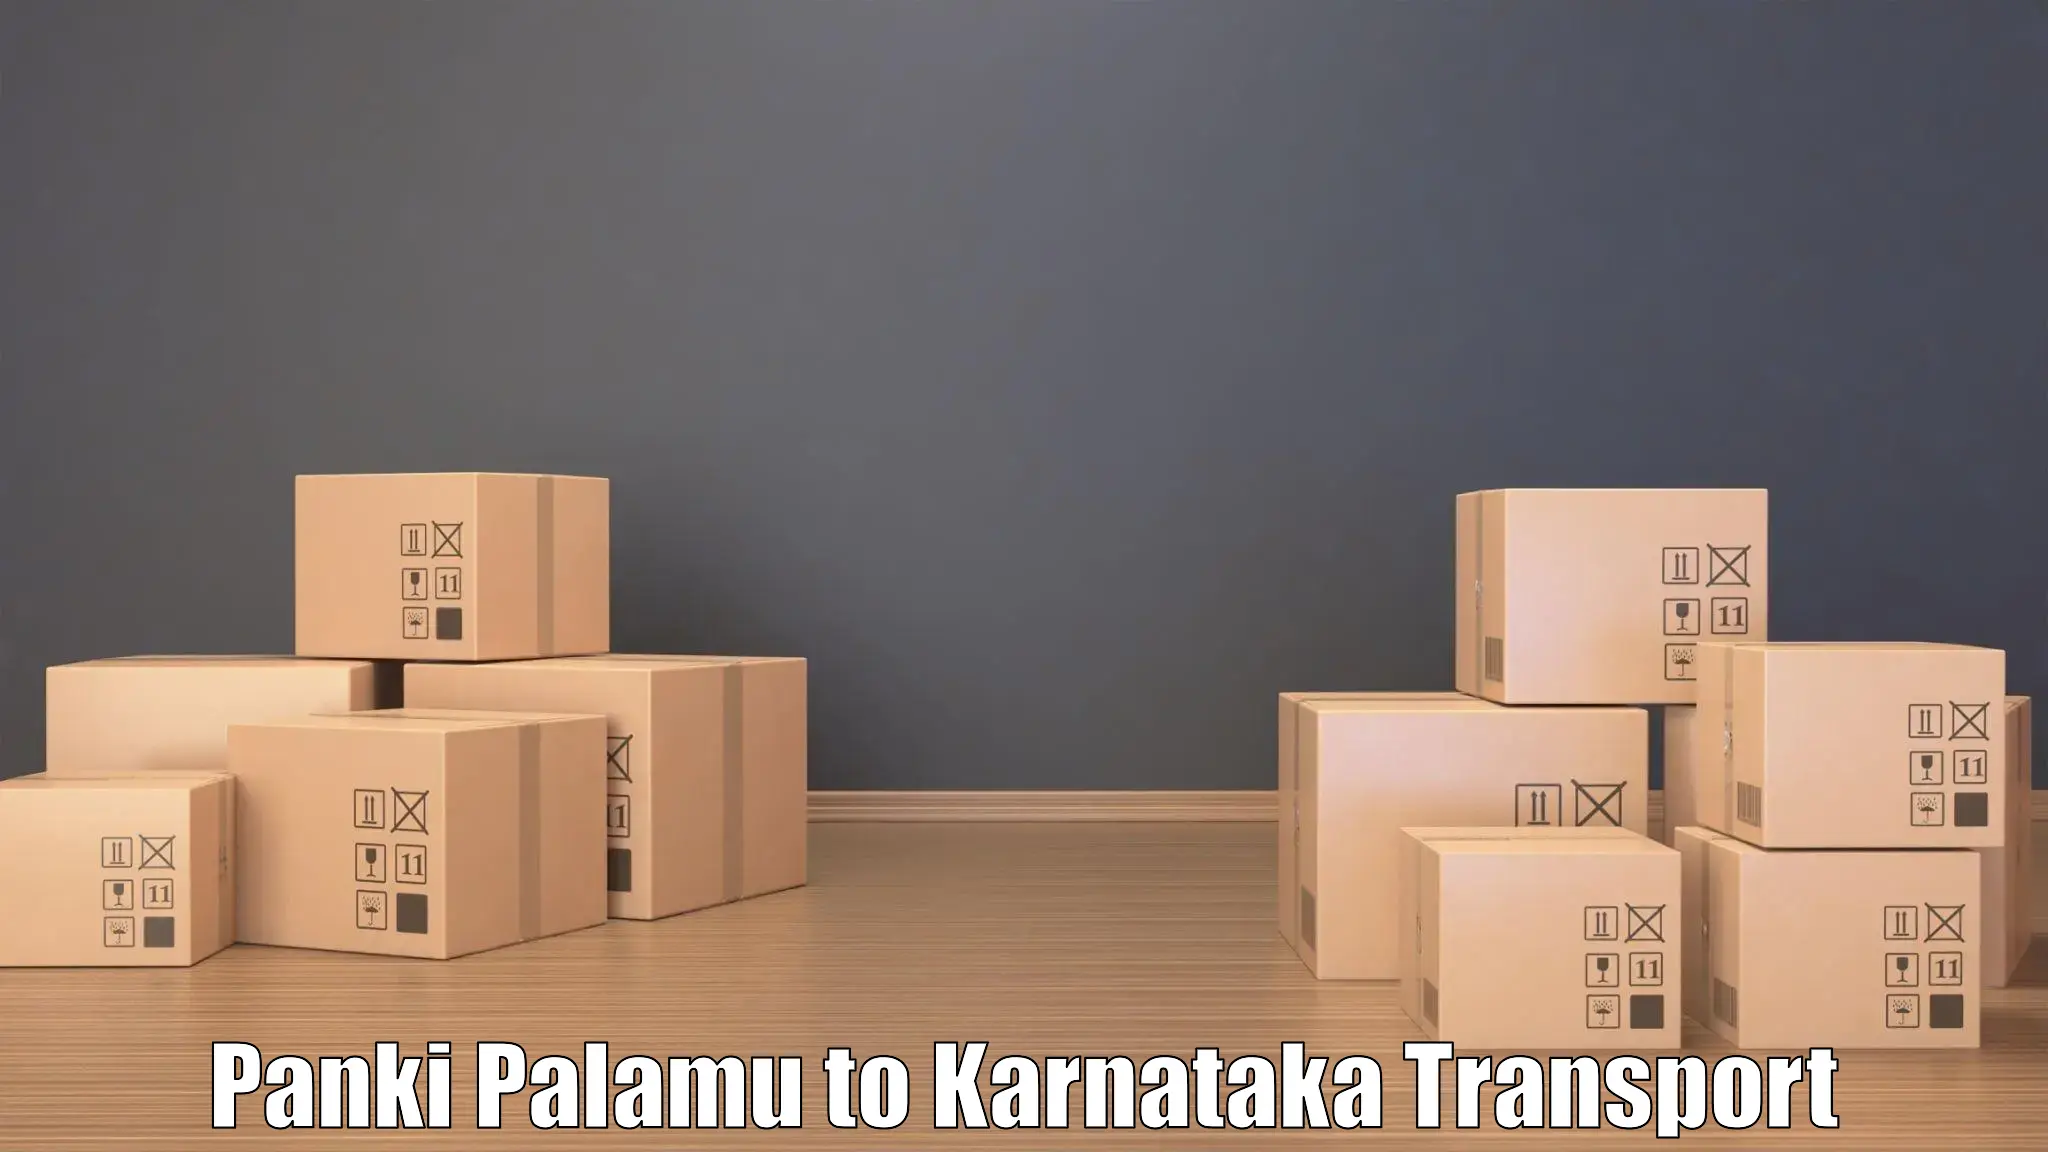 Express transport services Panki Palamu to Khanapur Karnataka